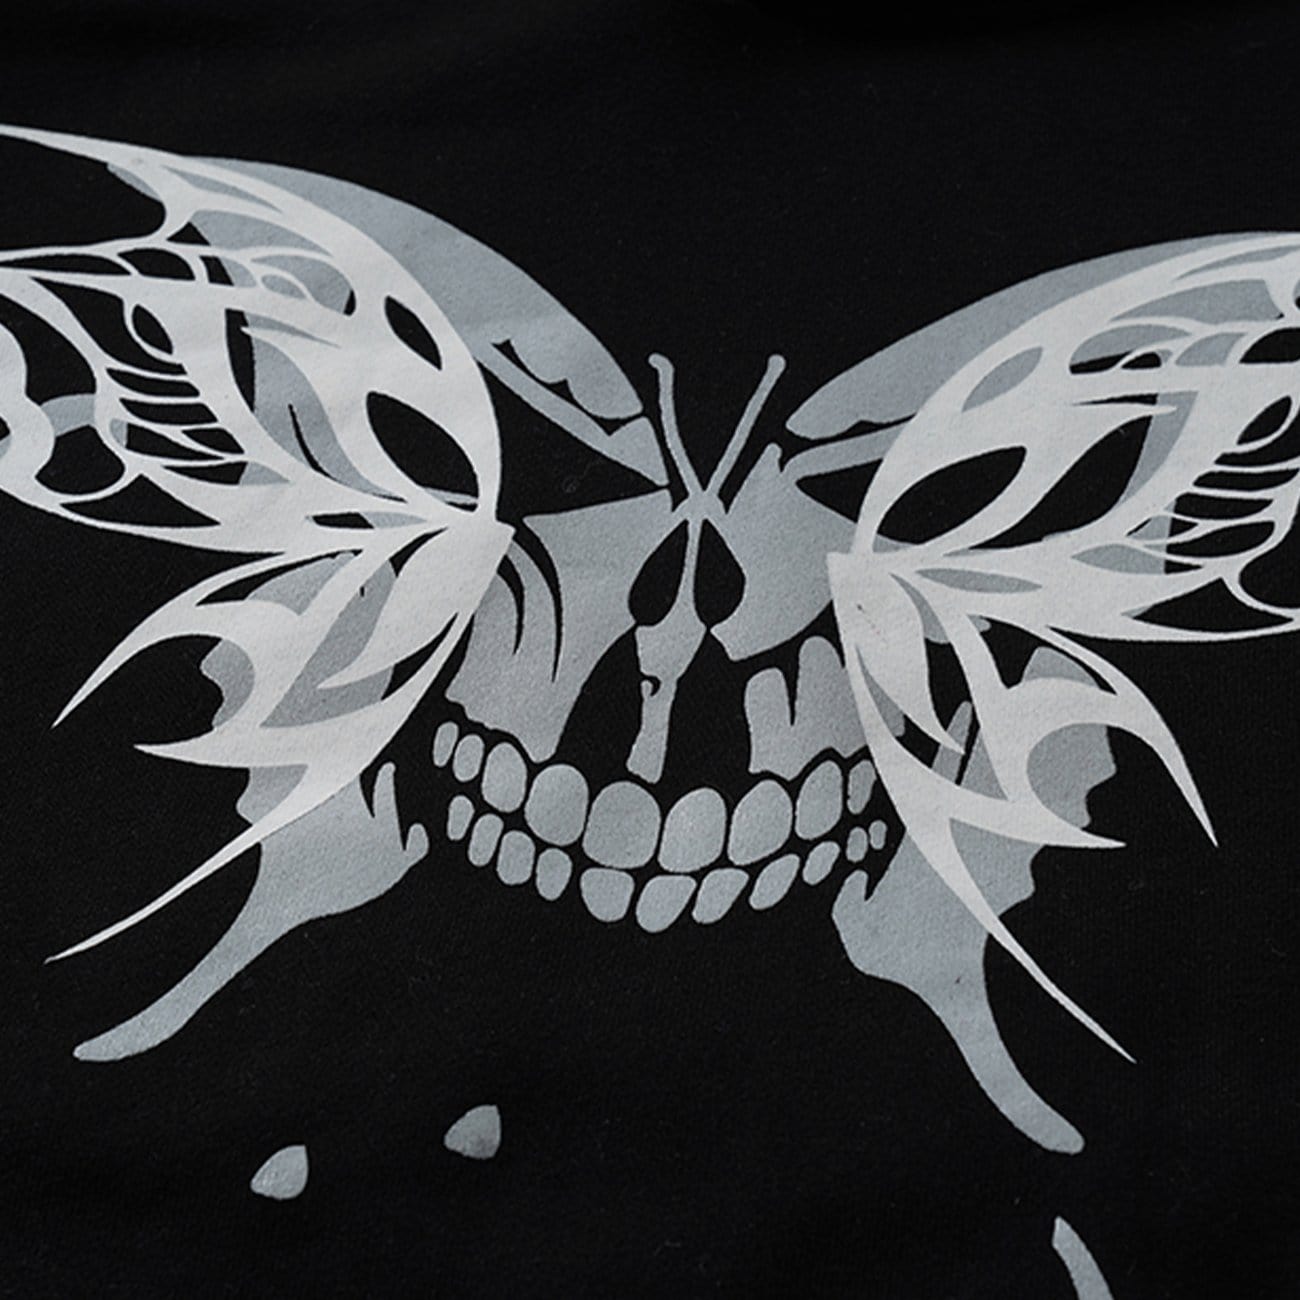 "Skull Butterfly" Hoodies Streetwear Brand Techwear Combat Tactical YUGEN THEORY